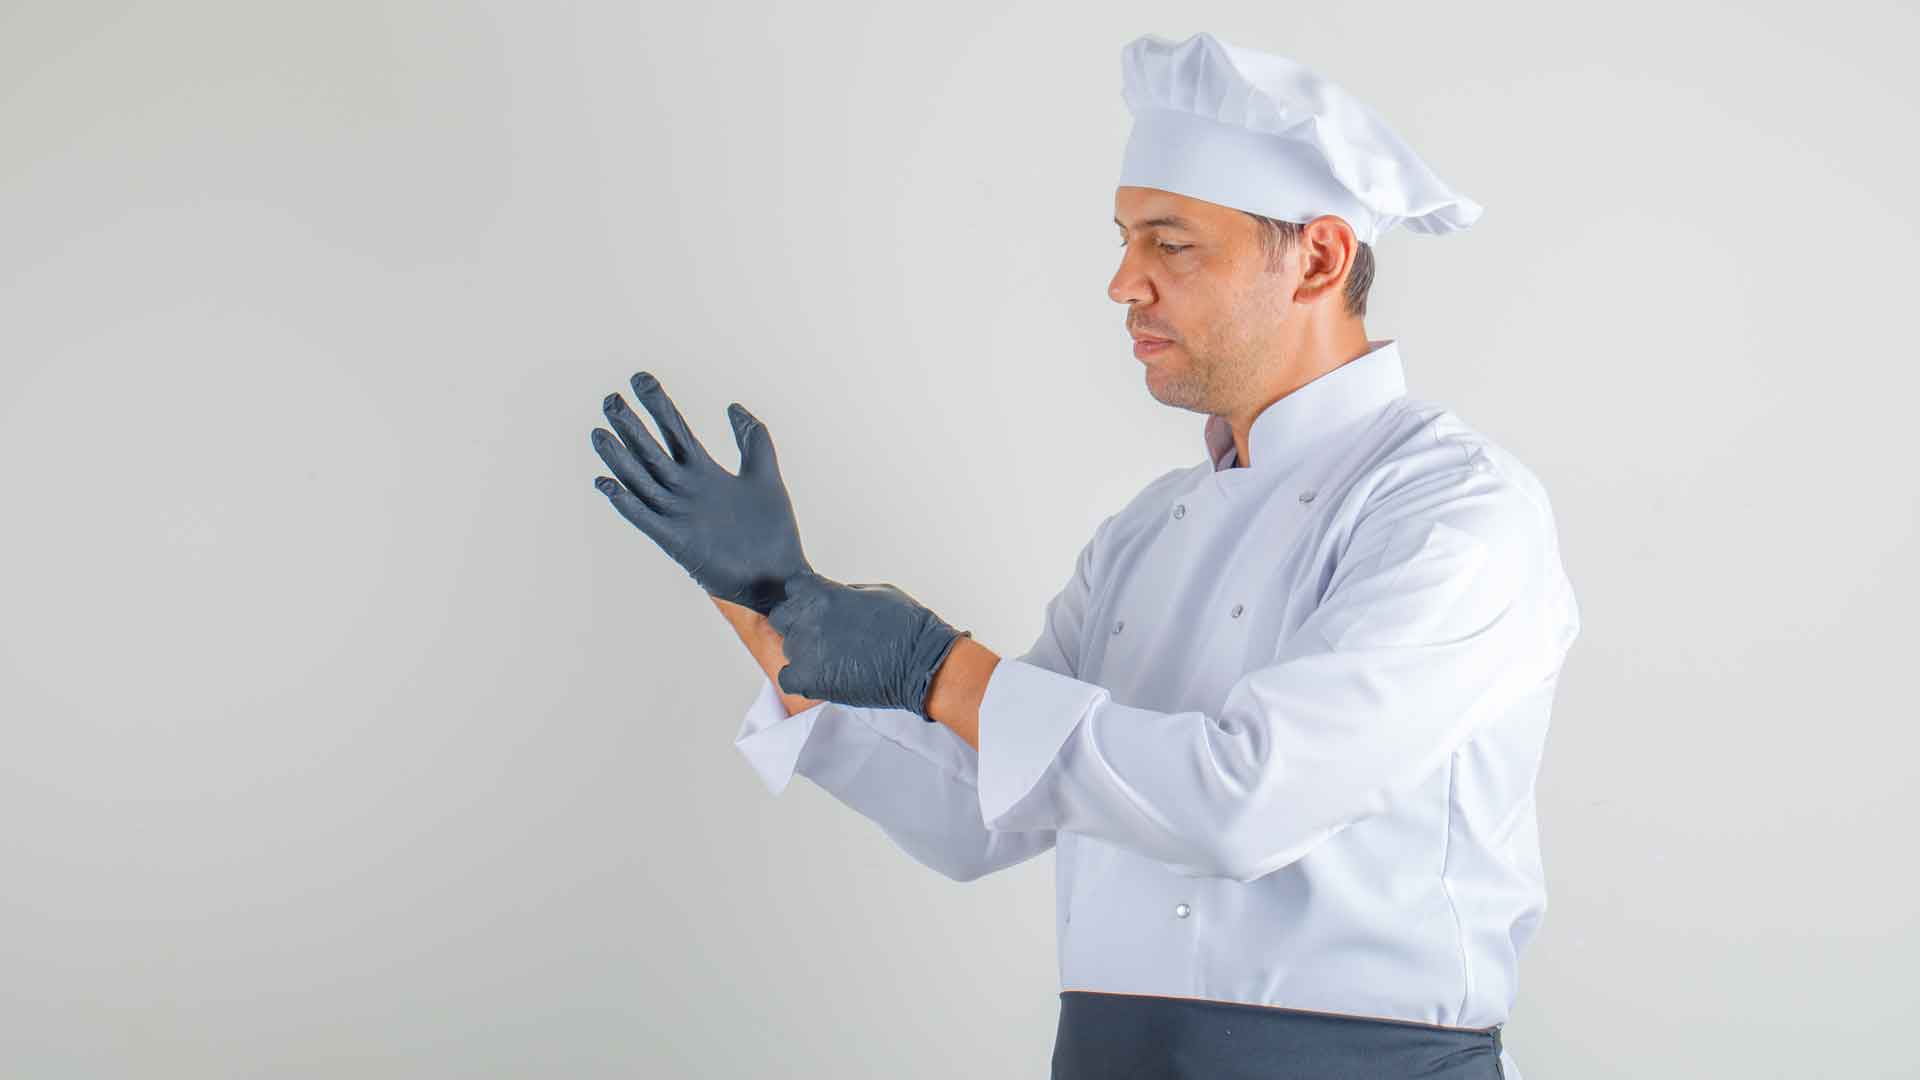 Шеф мужская работа 2. Повар в перчатках. Руки повара в перчатках. Перчатки для кондитера. Фотография шеф повара в перчатках.